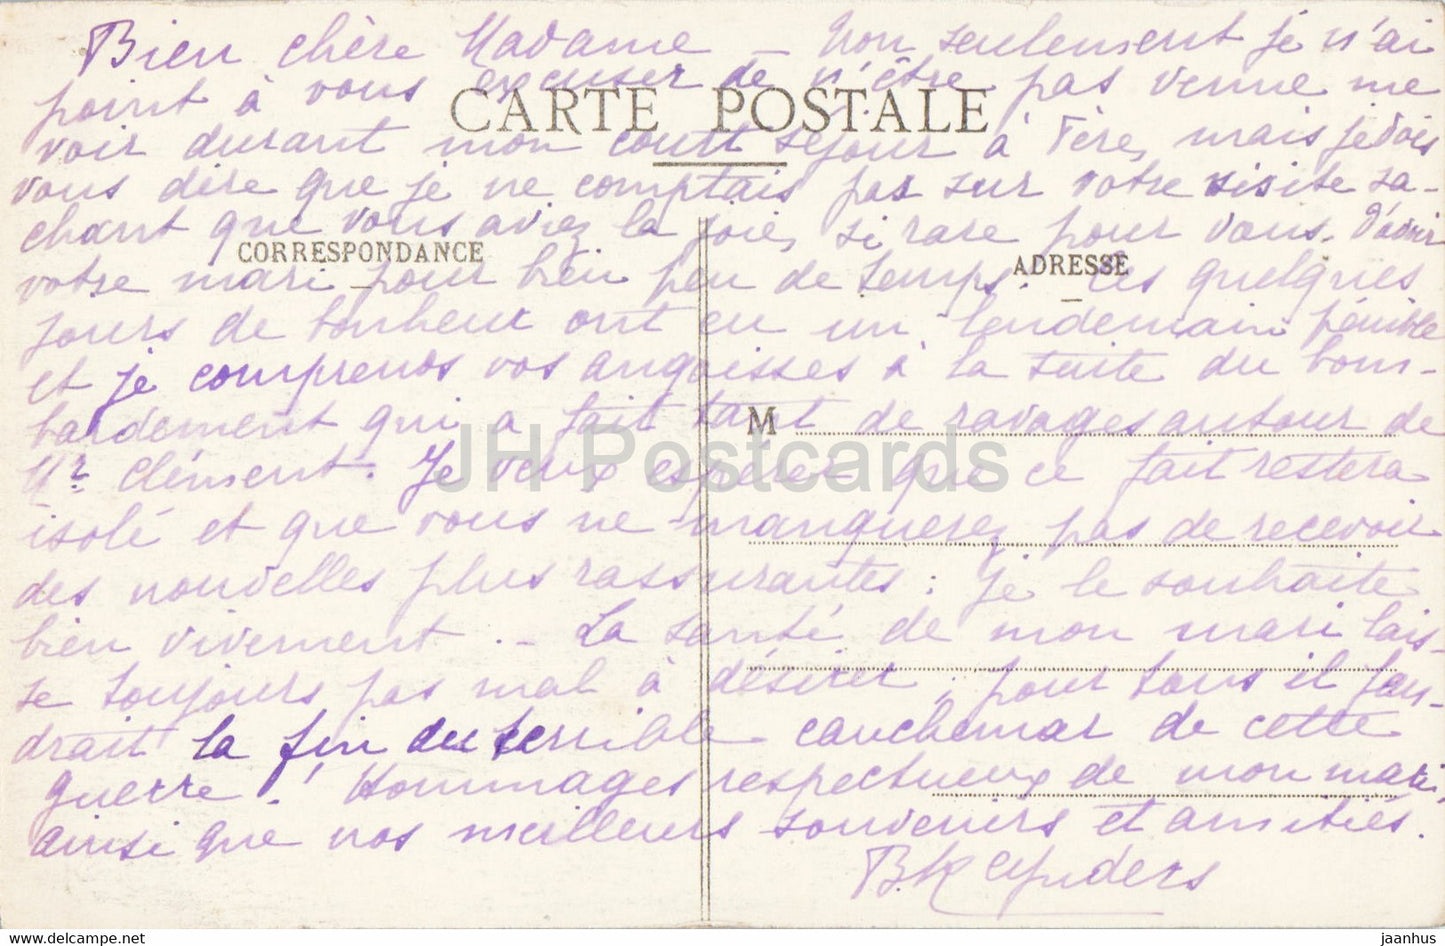 Dijon - Jacquemart Horloge de l'Eglise Notre Dame - carte postale ancienne - 1916 - France - occasion